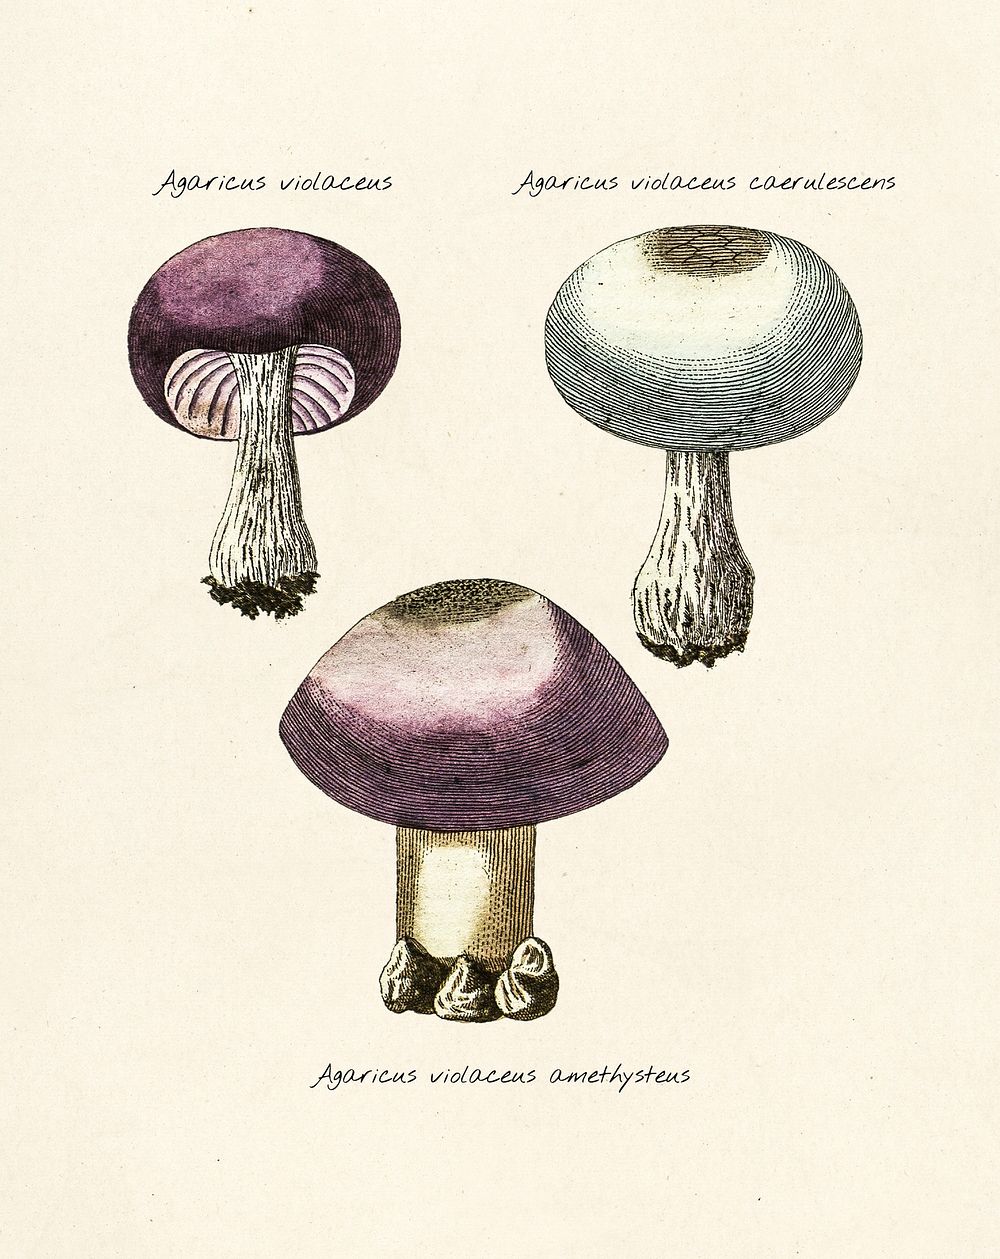 Antique illustration of agaricus violaceus, agaricus violaceus caerulescens and agaricus violaceus amethysteus